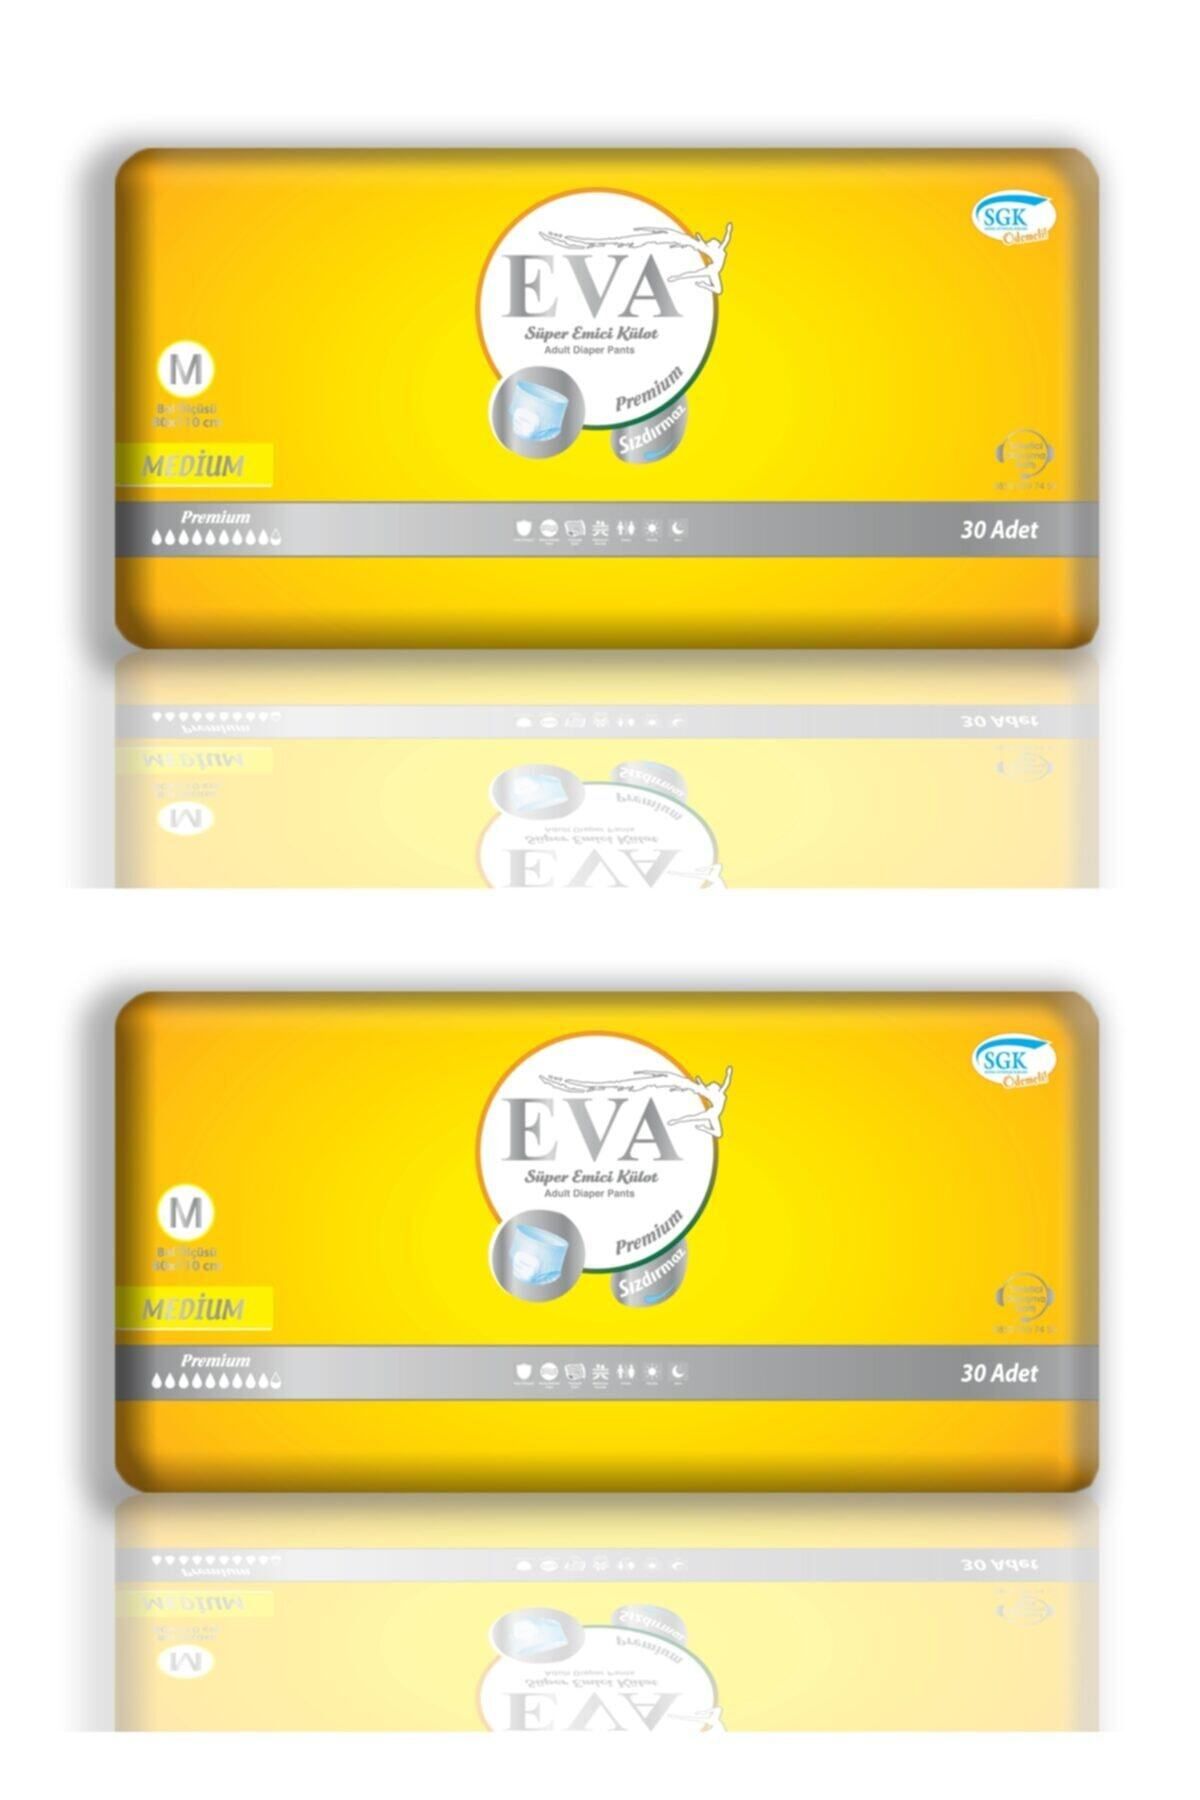 EVA Premium Külot 60 Adet Medium Kadın Erkek Hasta Bezi